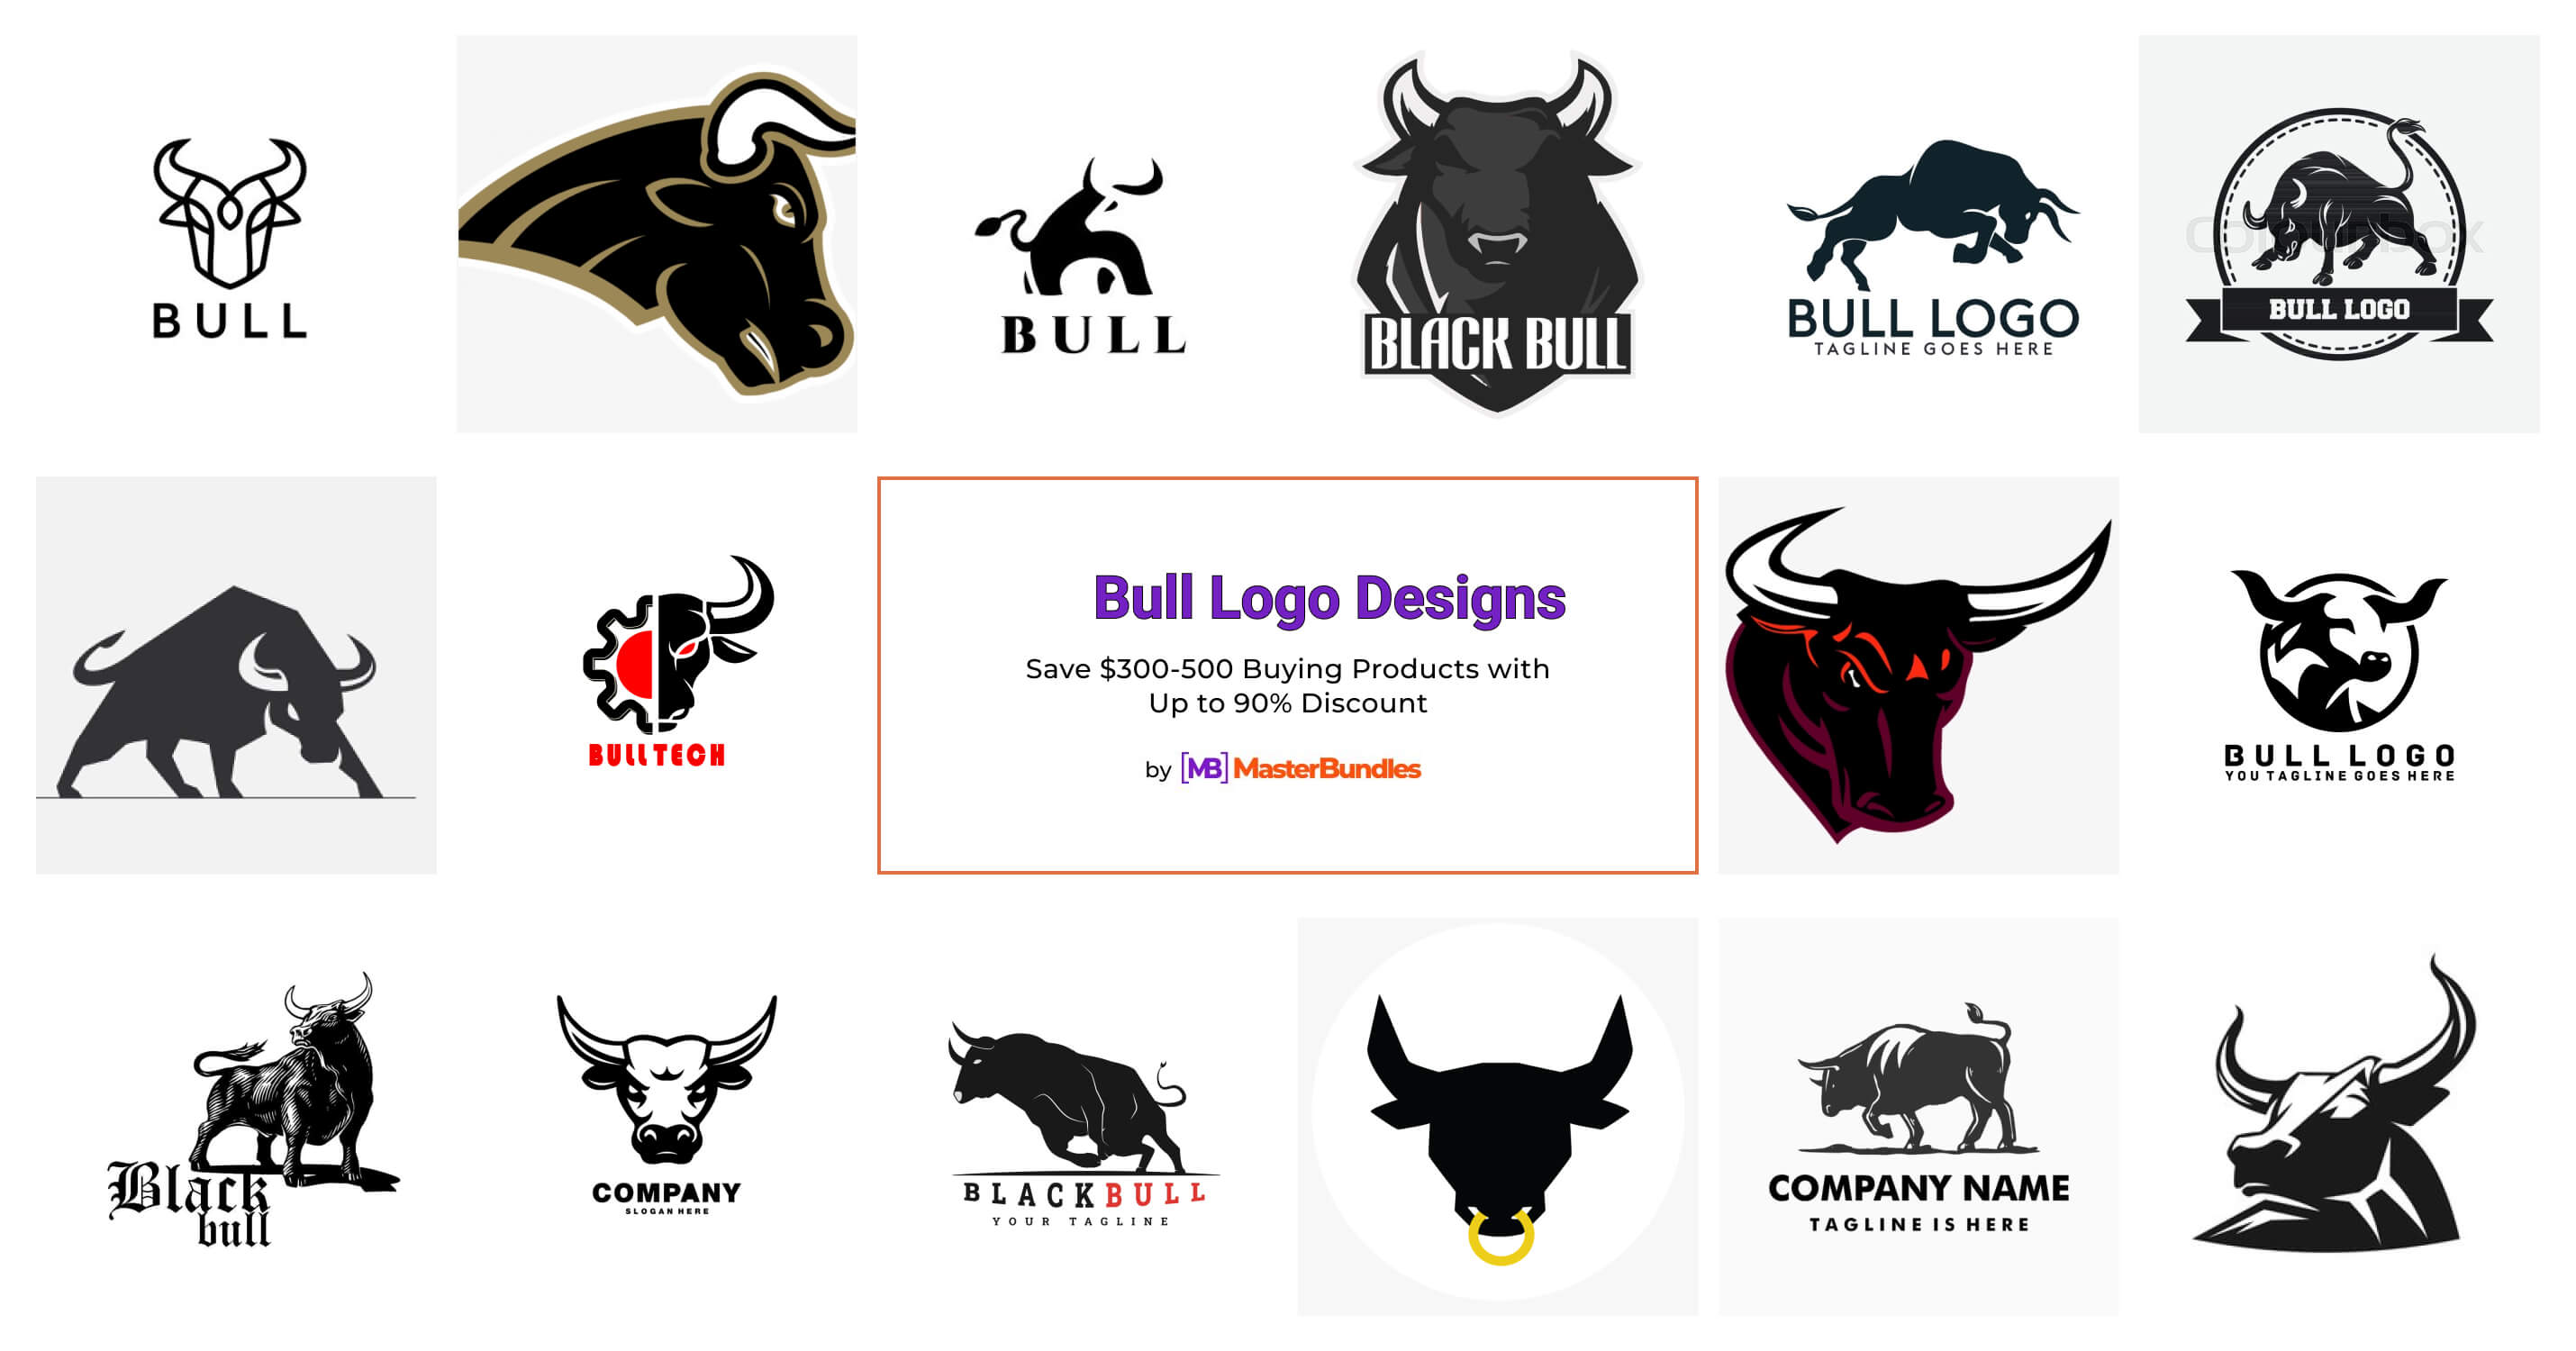 bull logo clothing brand 9196292 Vector Art at Vecteezy